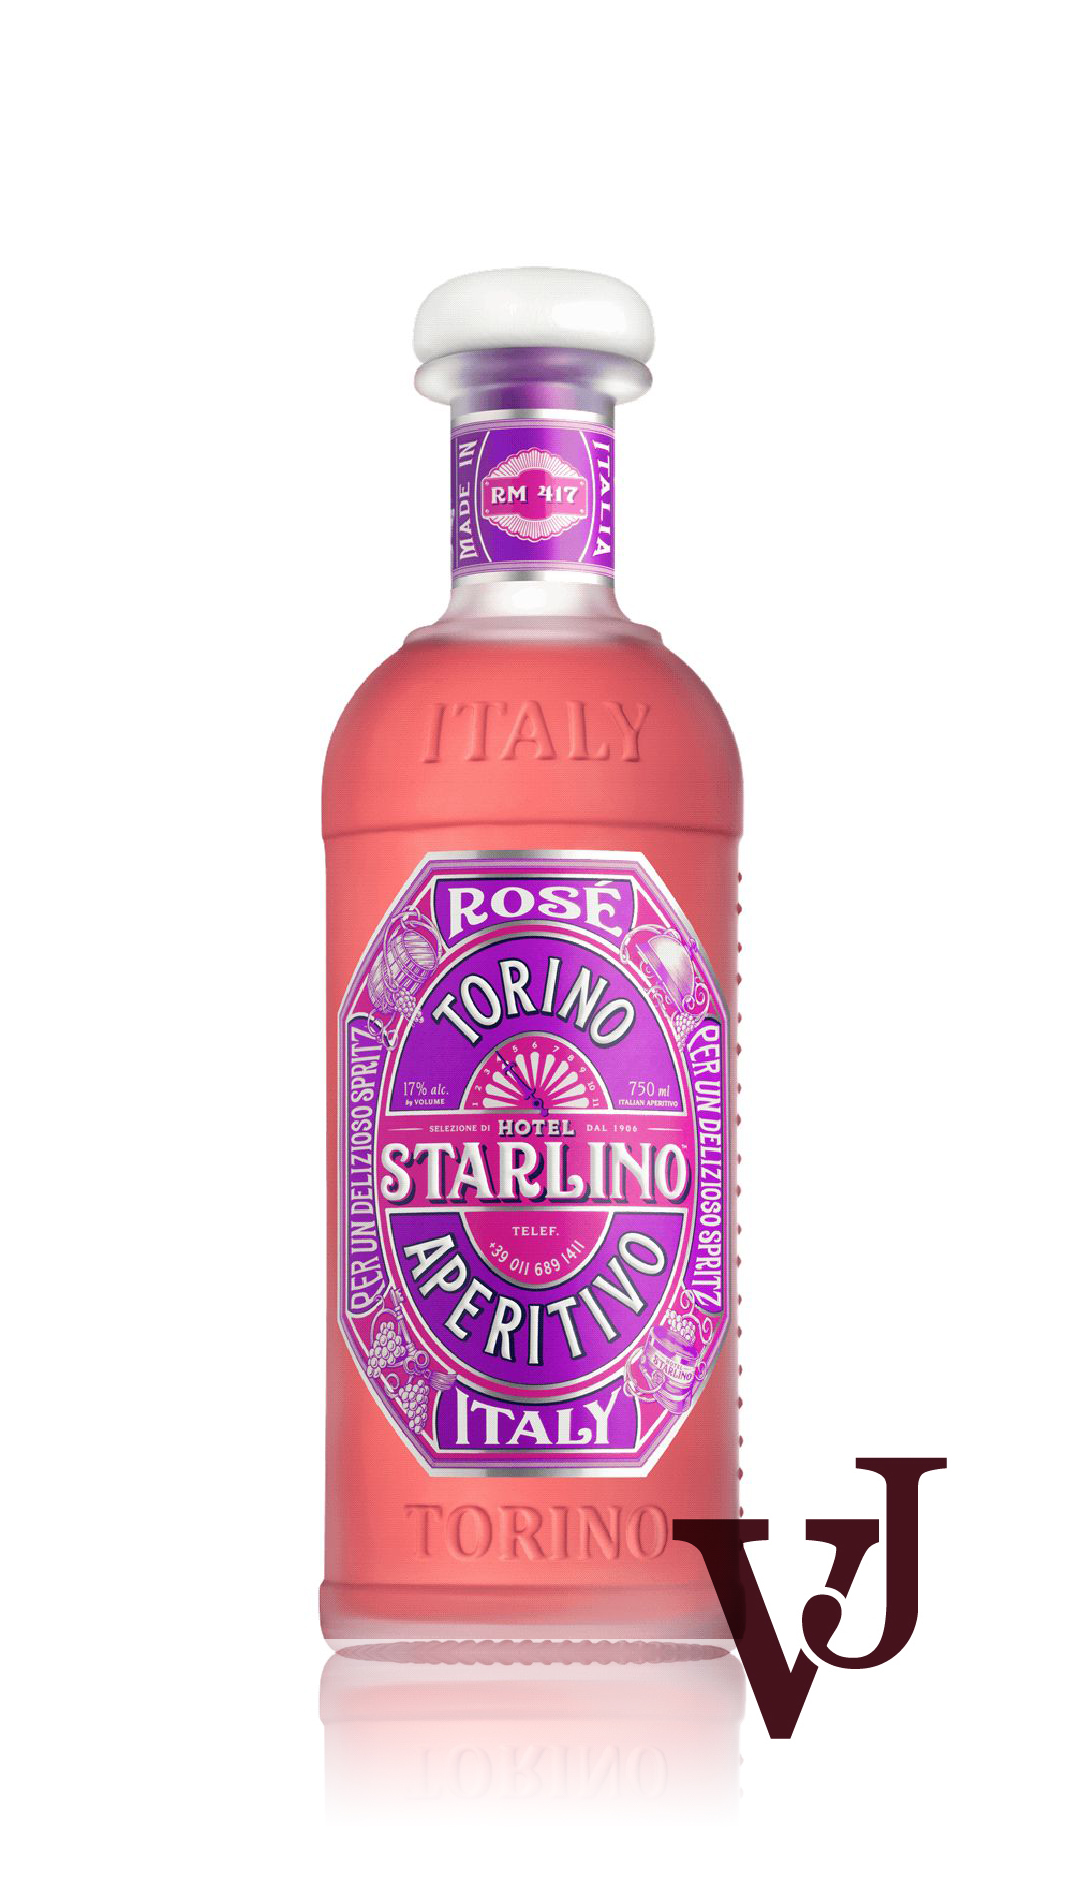 Övrigt vin - Hotel Starlino Rosé Torino Aperitivo artikel nummer 7856501 från producenten Biggar & Leith från området Italien